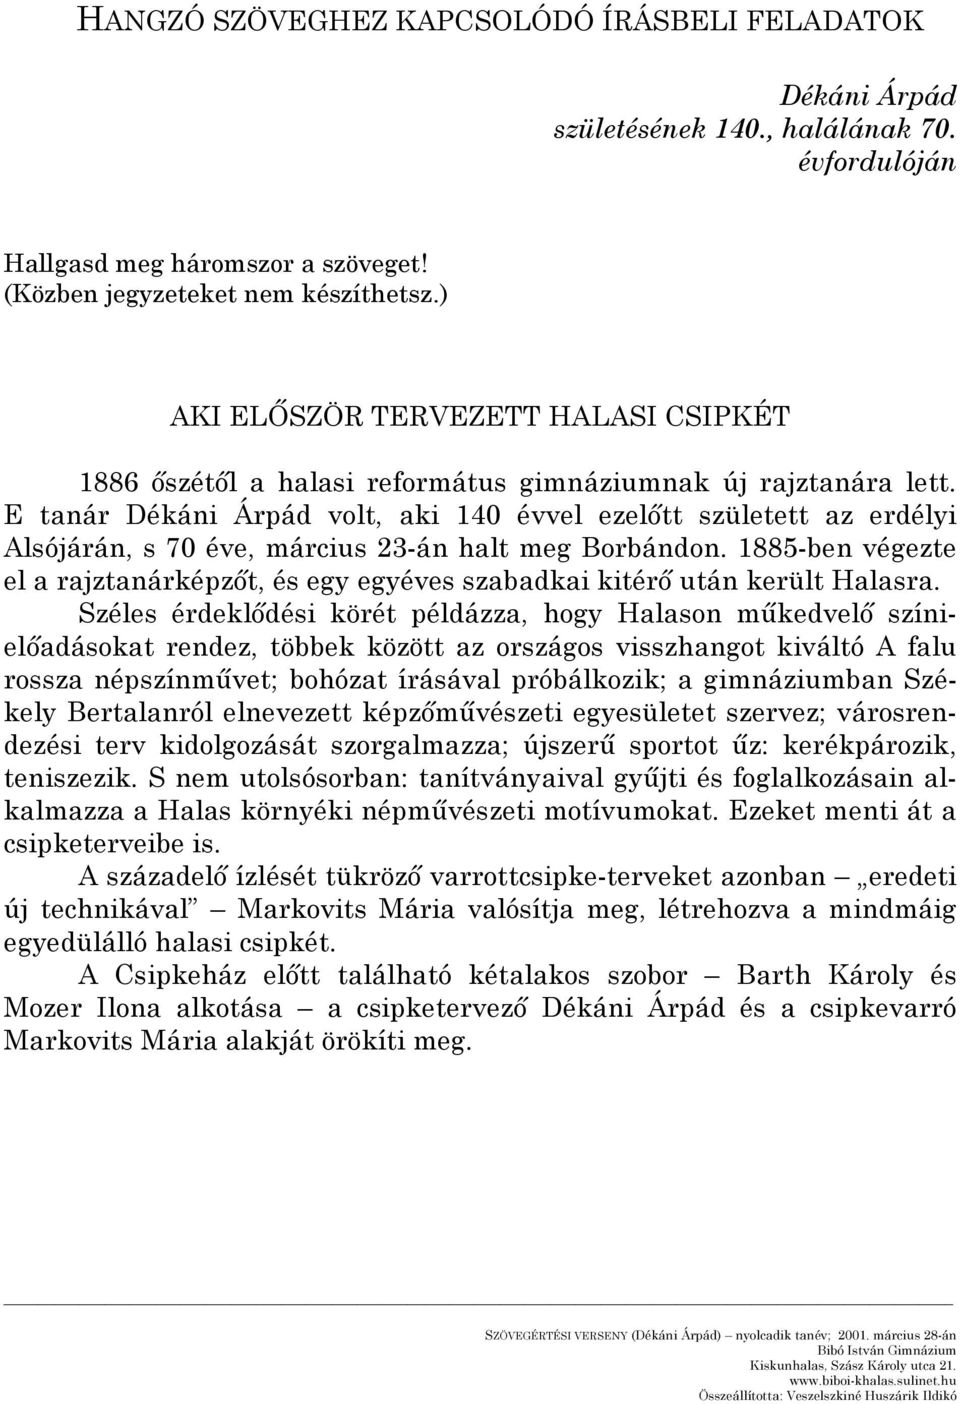 E tanár Dékáni Árpád volt, aki 140 évvel ezelőtt született az erdélyi Alsójárán, s 70 éve, március 3-án halt meg Borbándon.